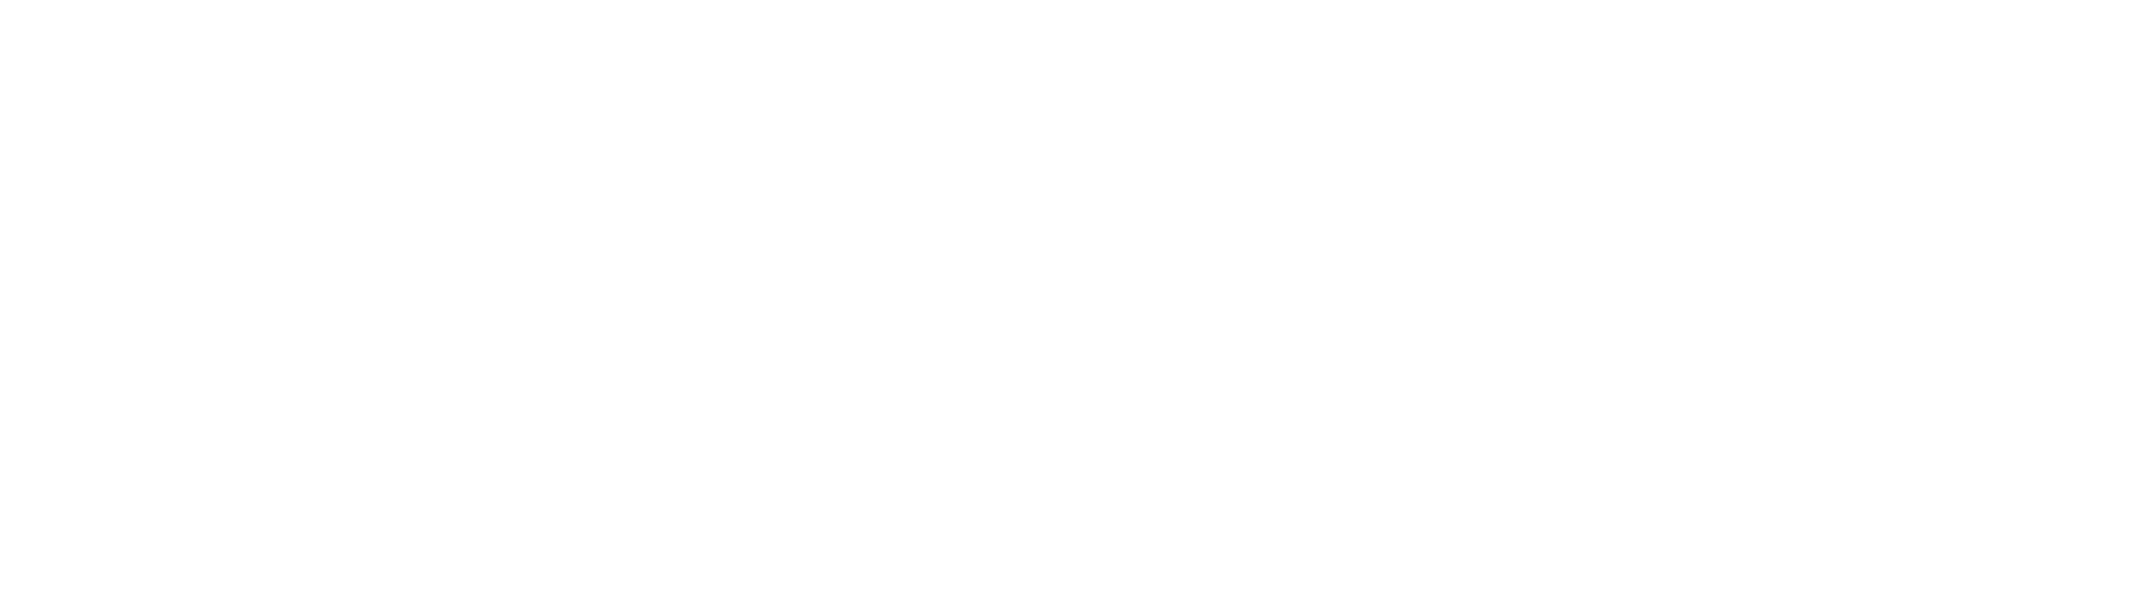 Michael Kolarik